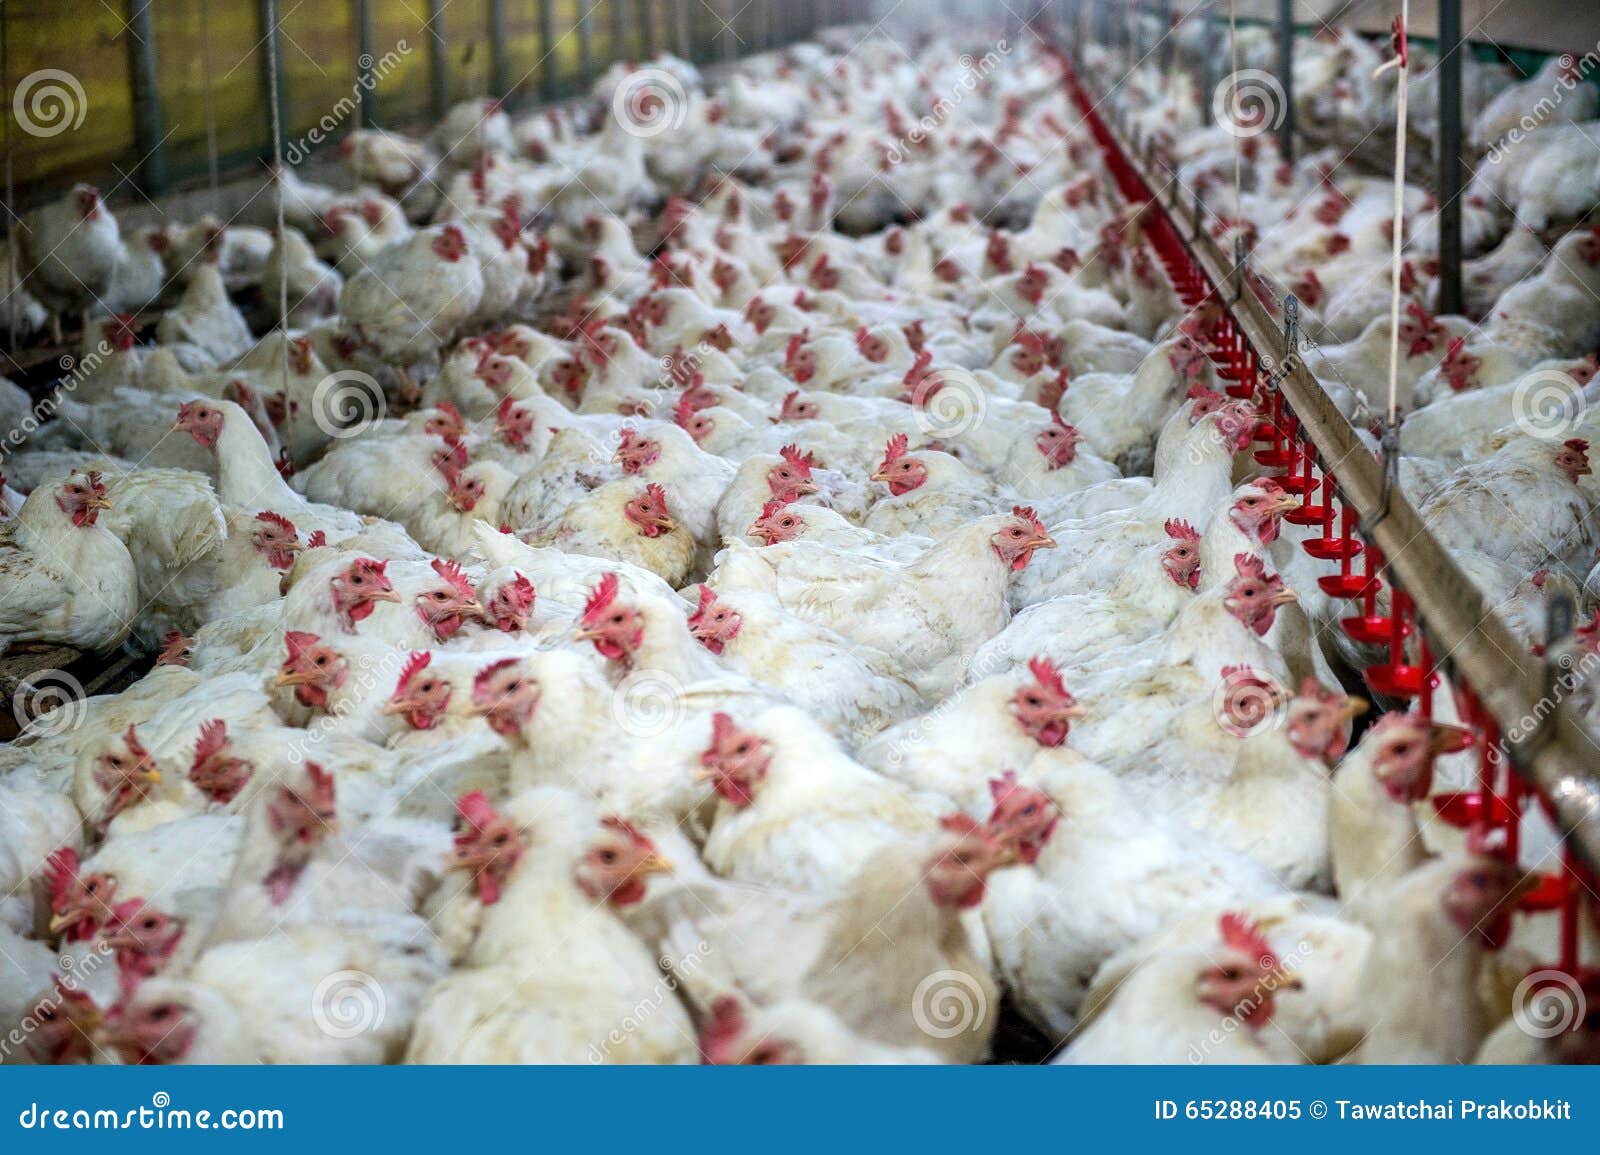 sick chicken or sad chicken in farm,epidemic, bird flu.